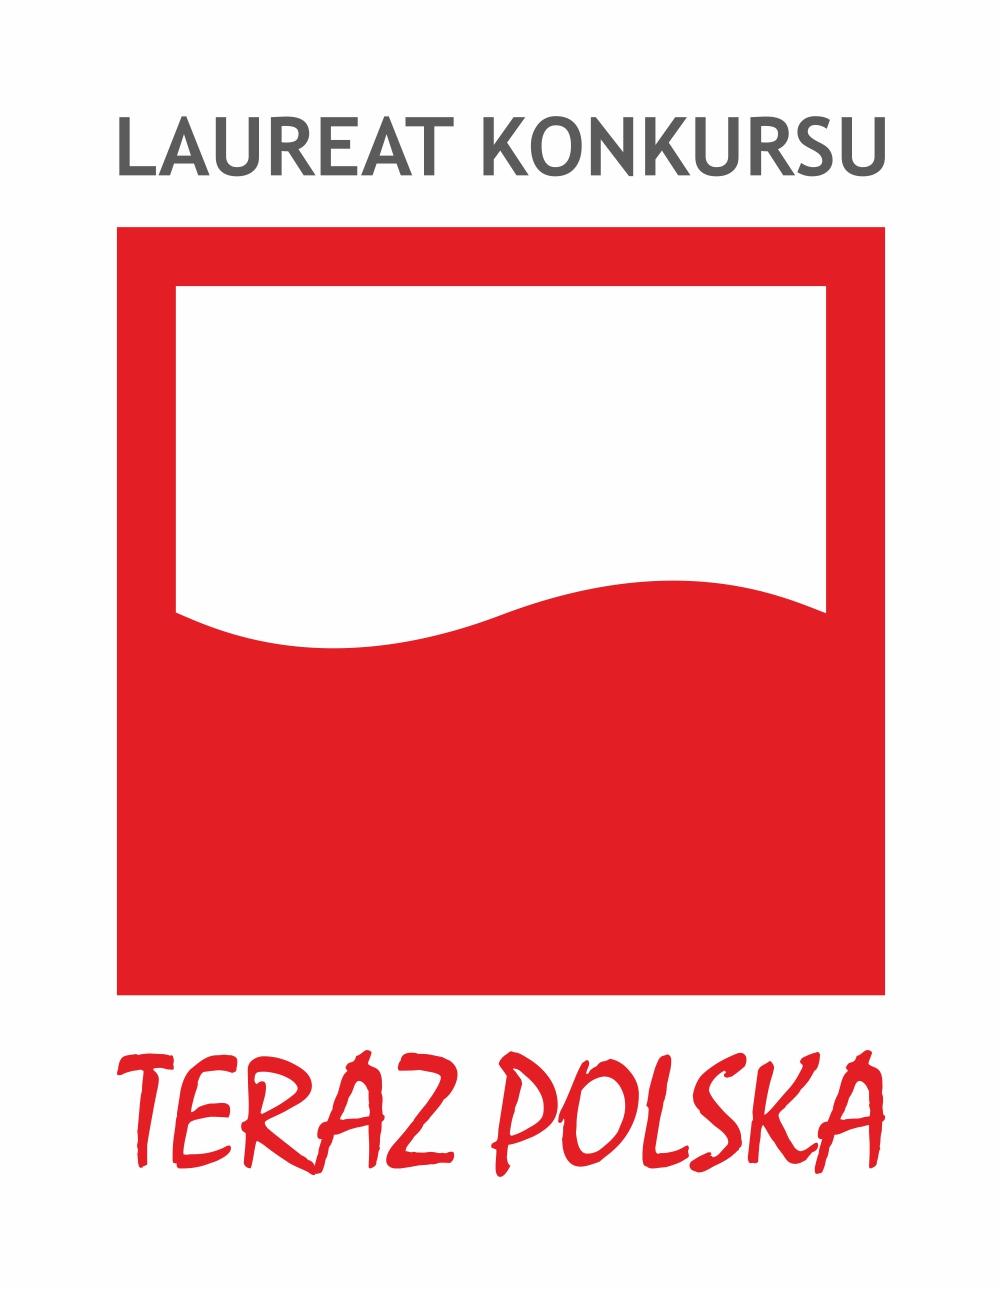 logo teraz polska laureat konkursu